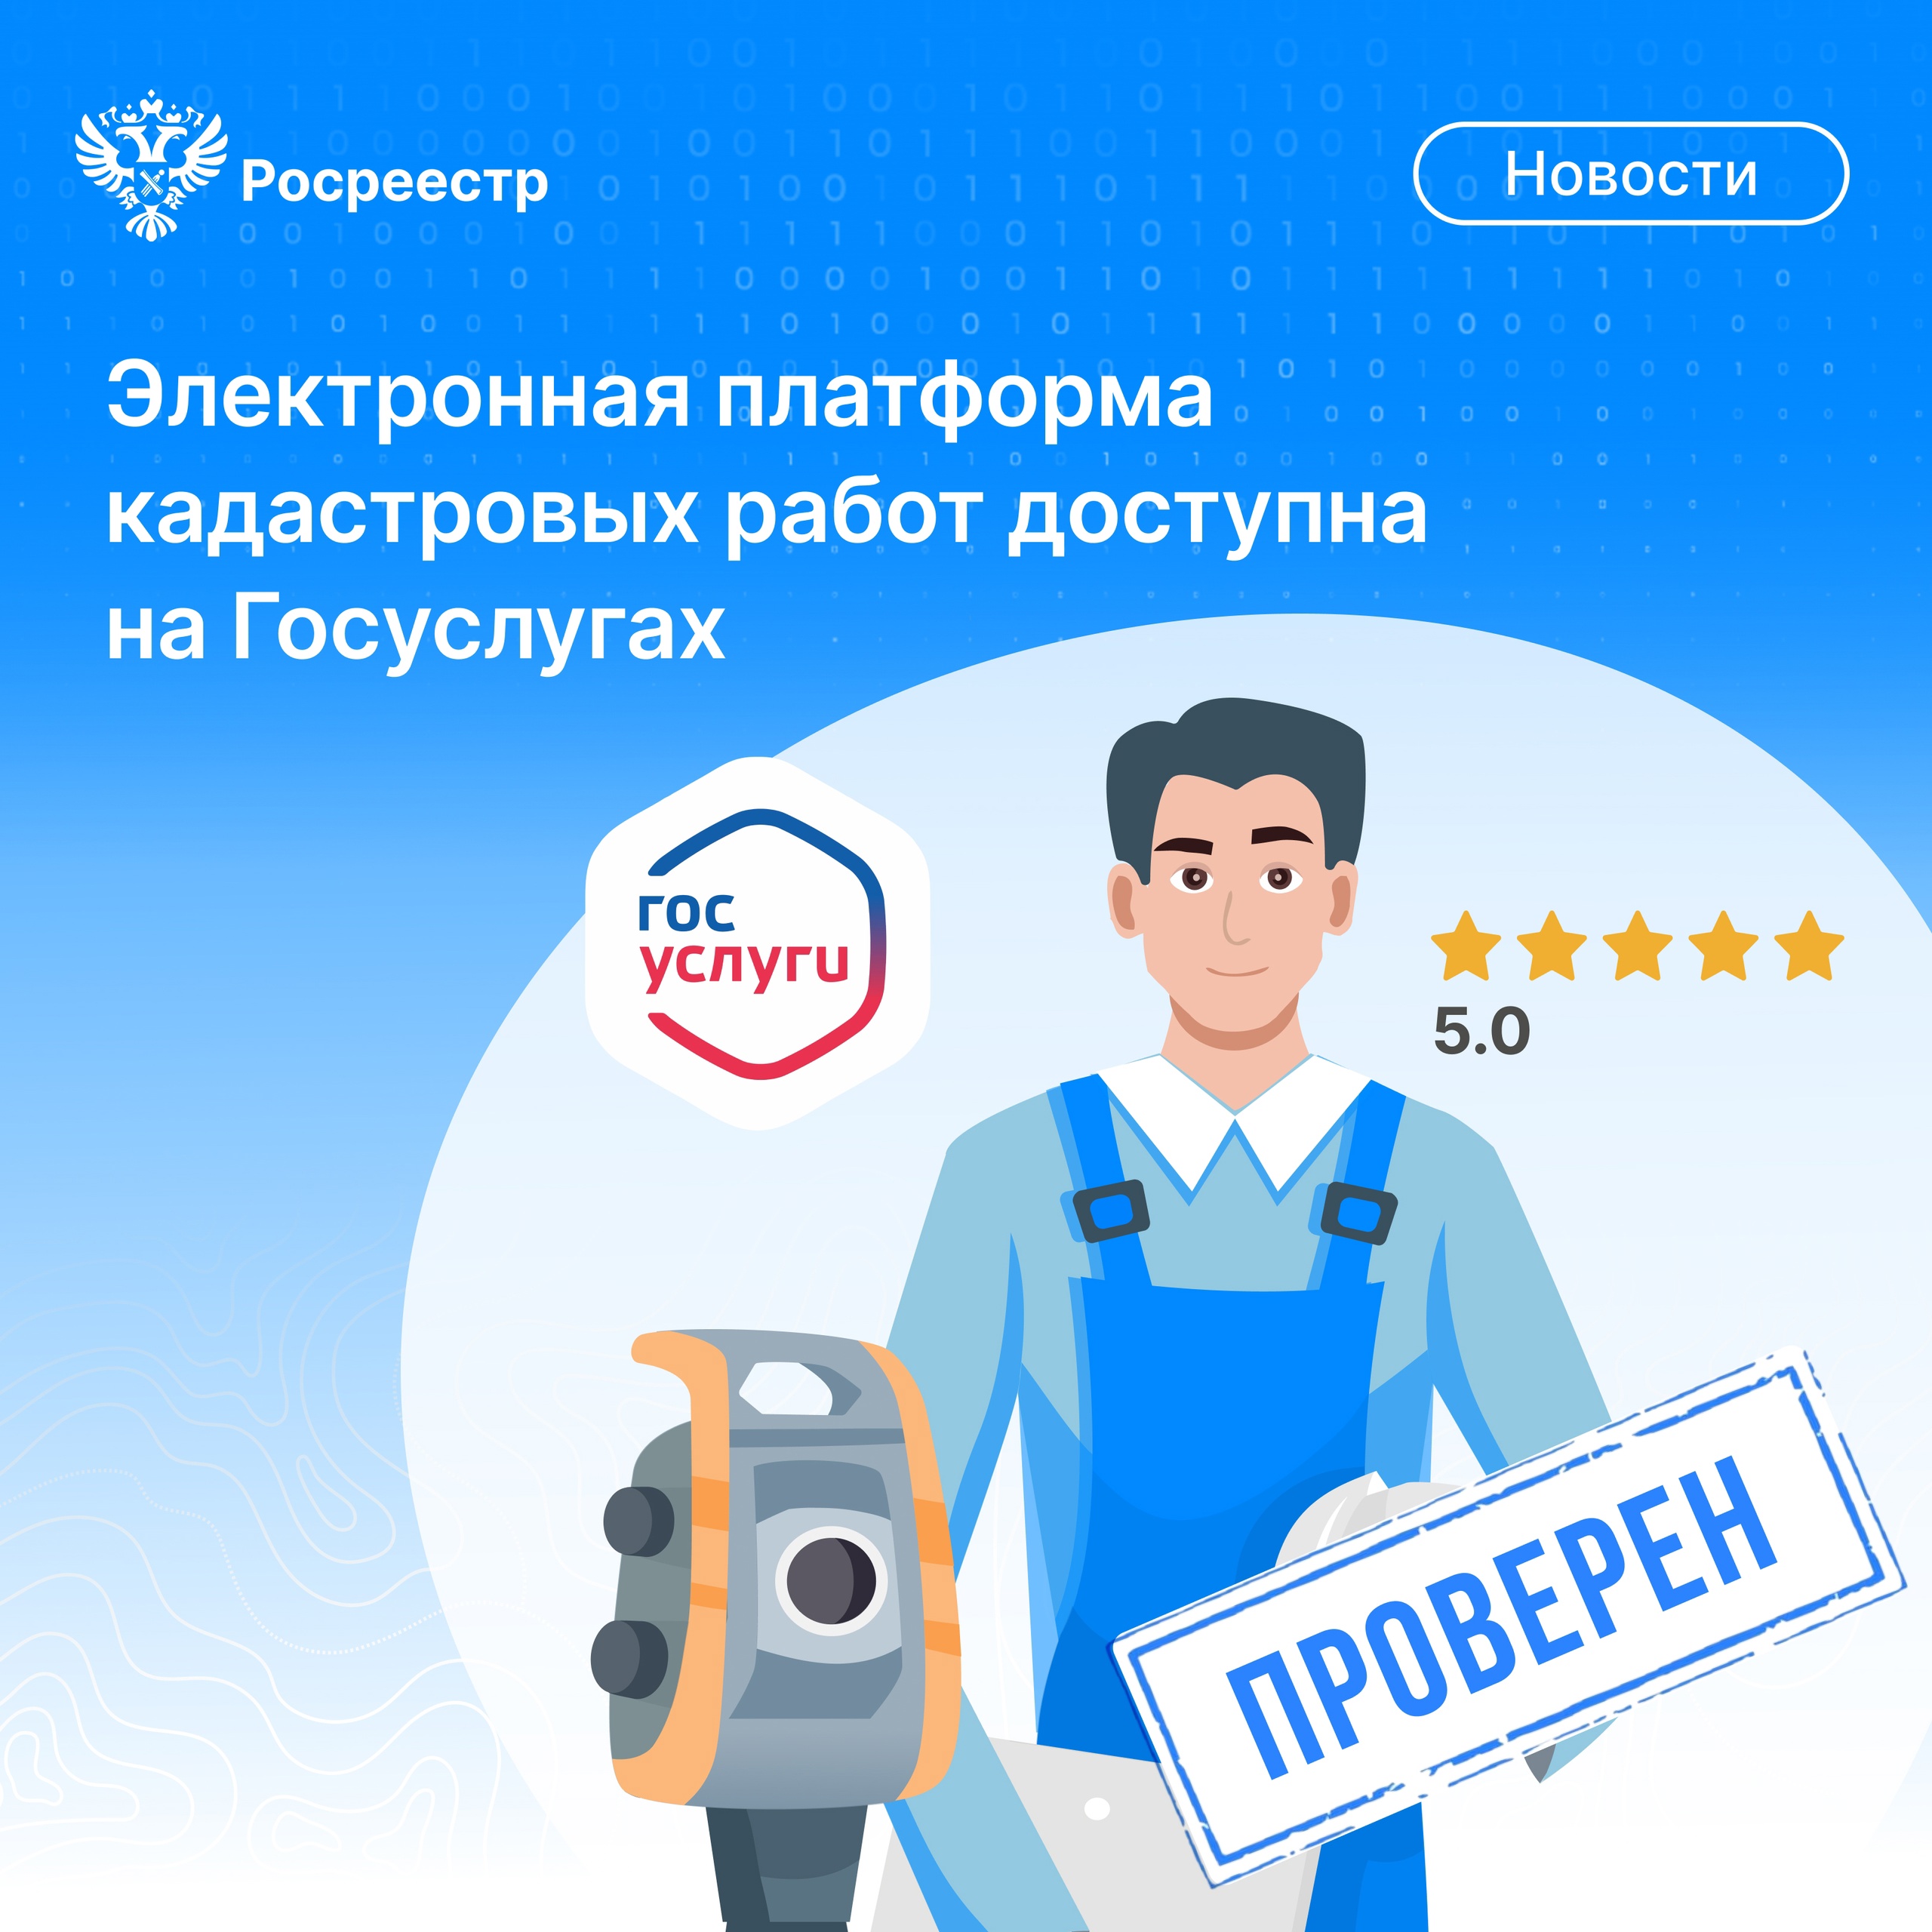 Жители Белгородского района могут выбрать проверенного кадастрового инженера, воспользовавшись сервисом на Госуслугах.